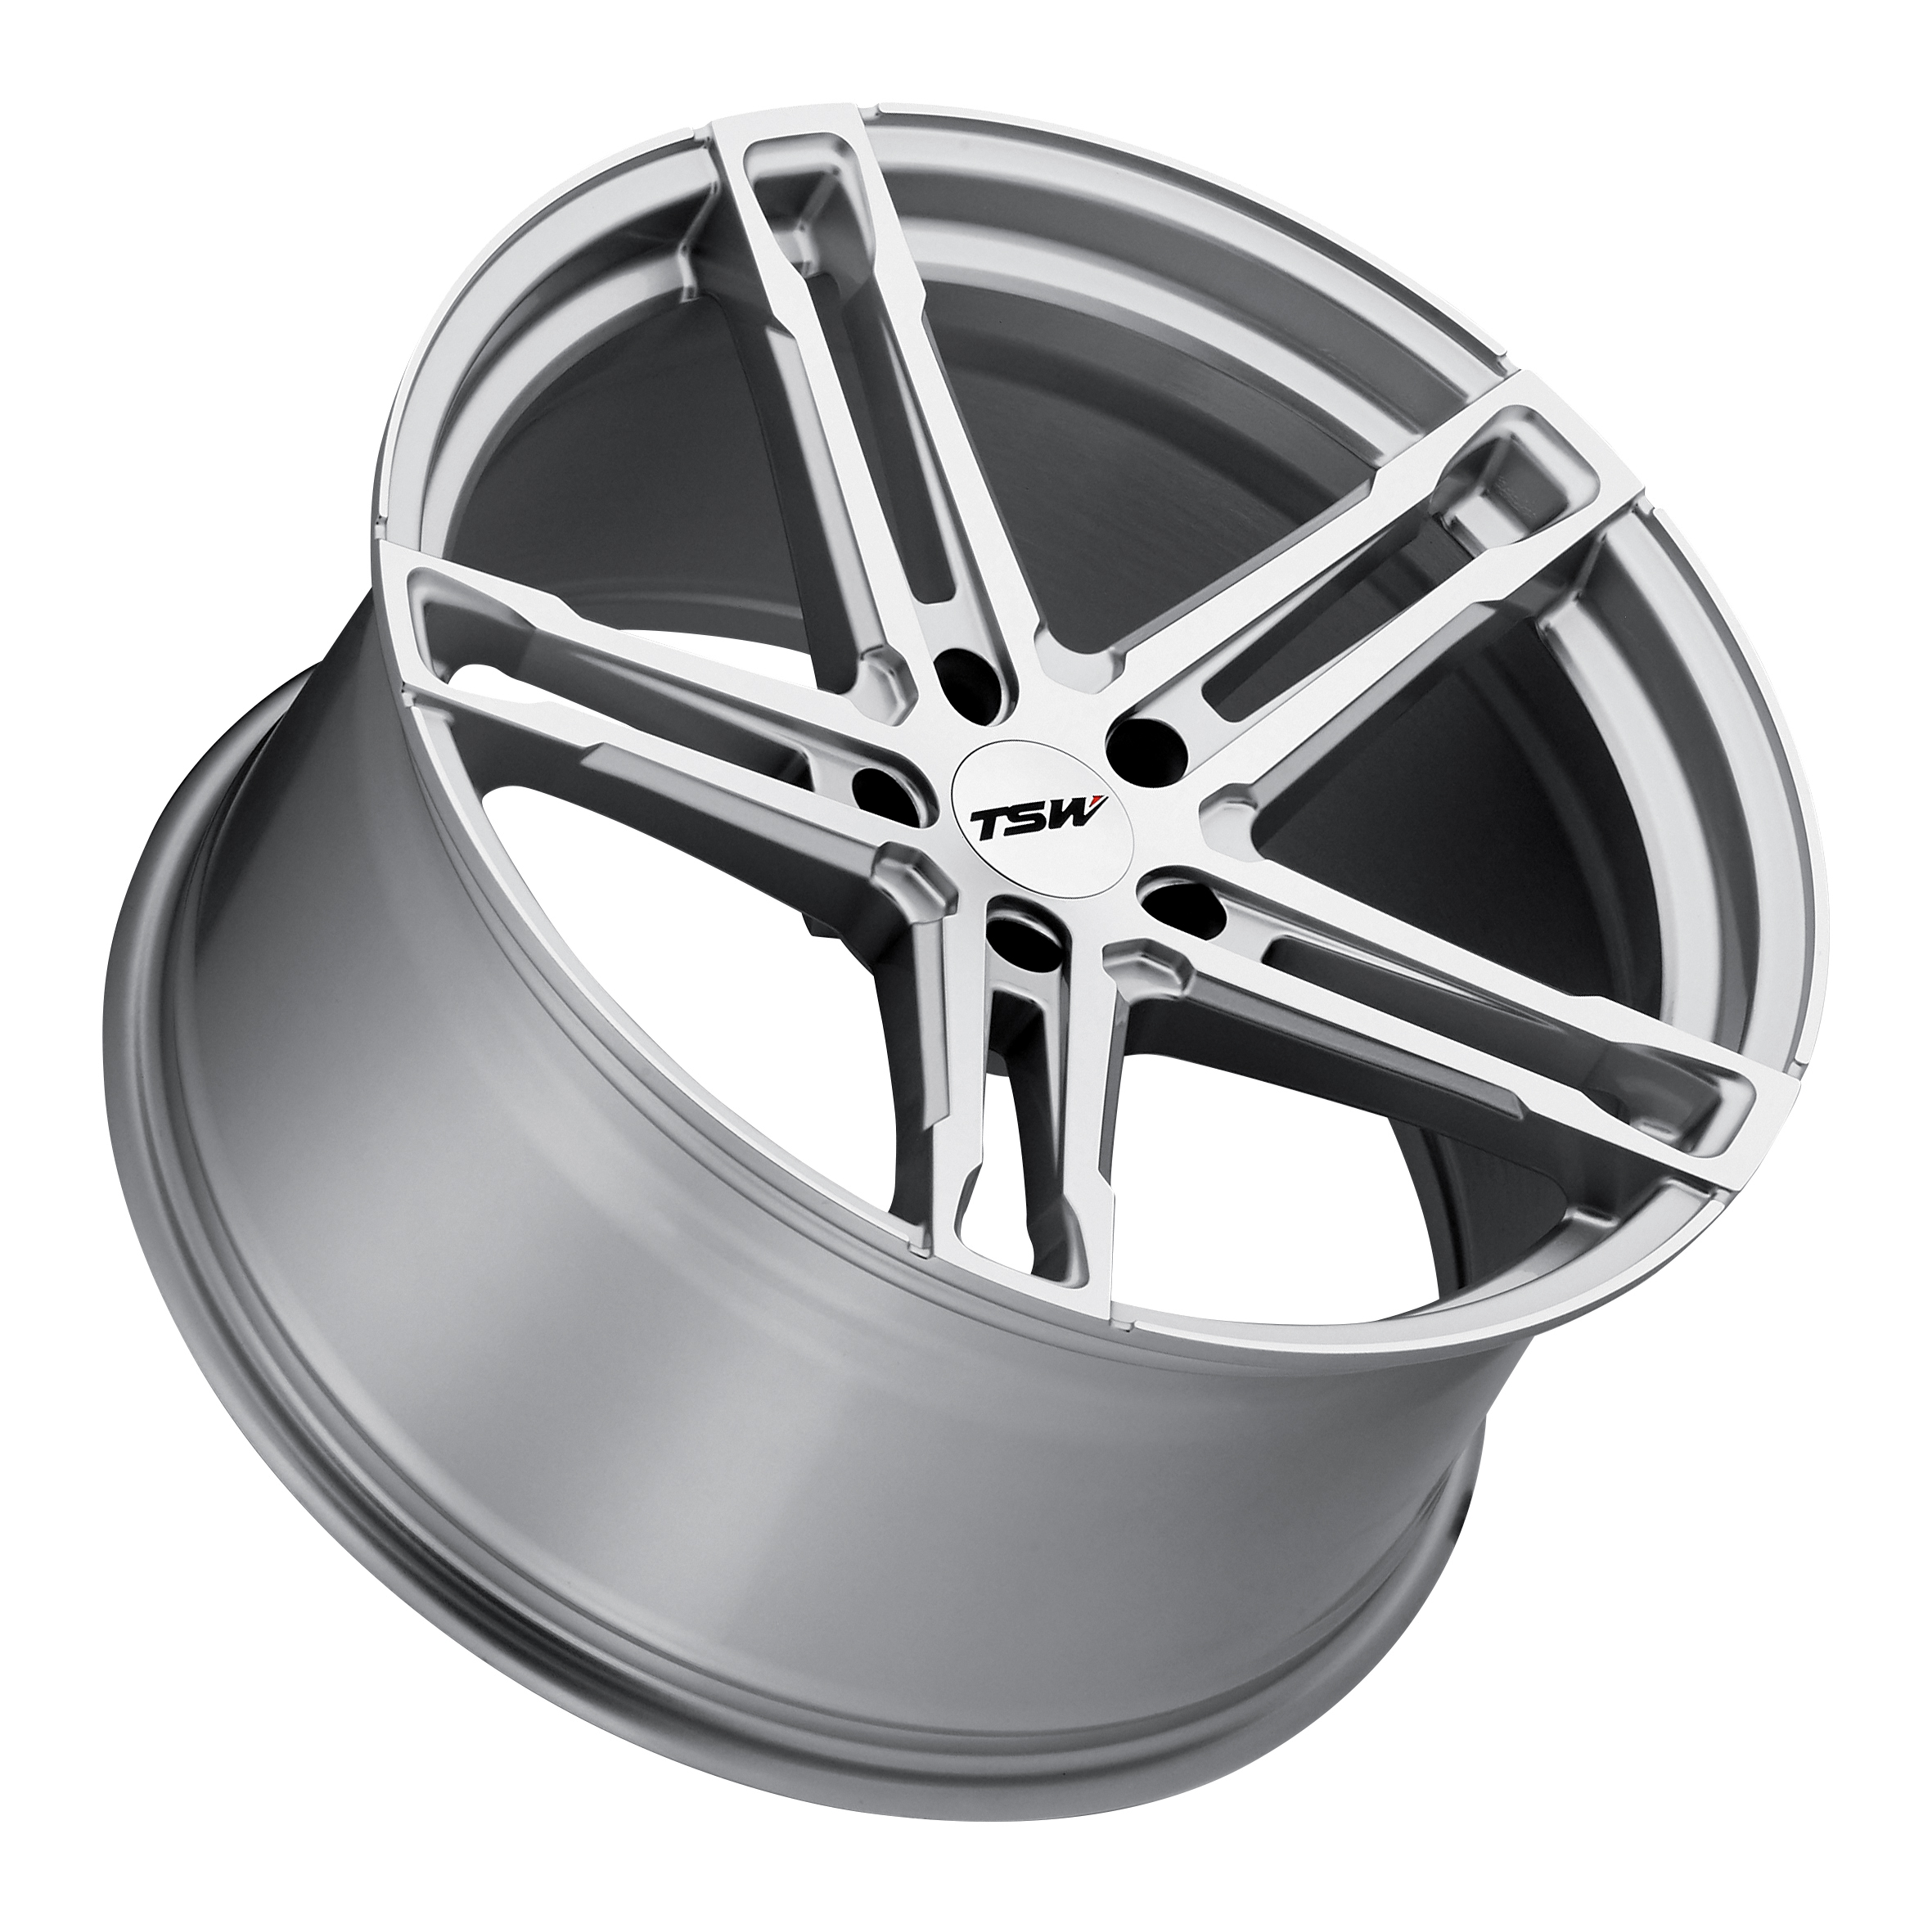 TSW Alloy Wheels- Mechanica in Silver Mirror Cut Face